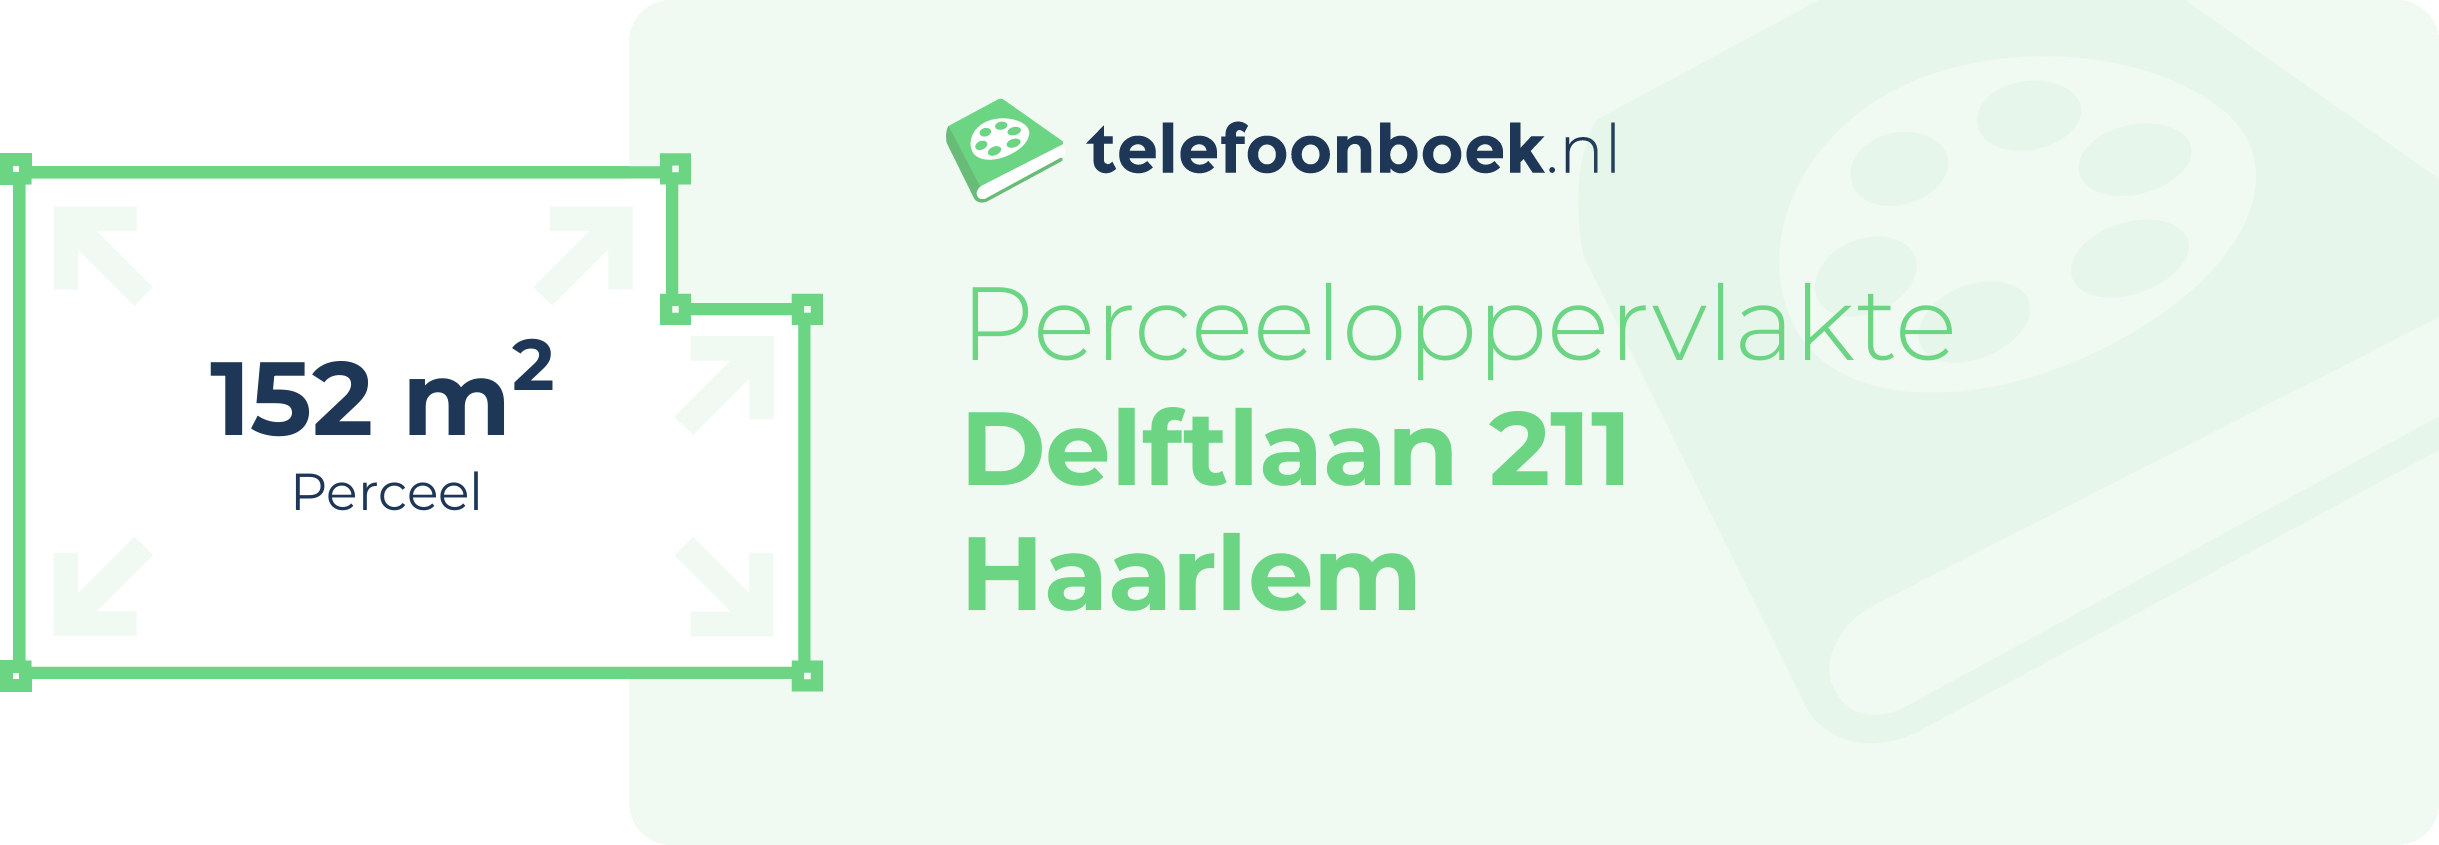 Perceeloppervlakte Delftlaan 211 Haarlem